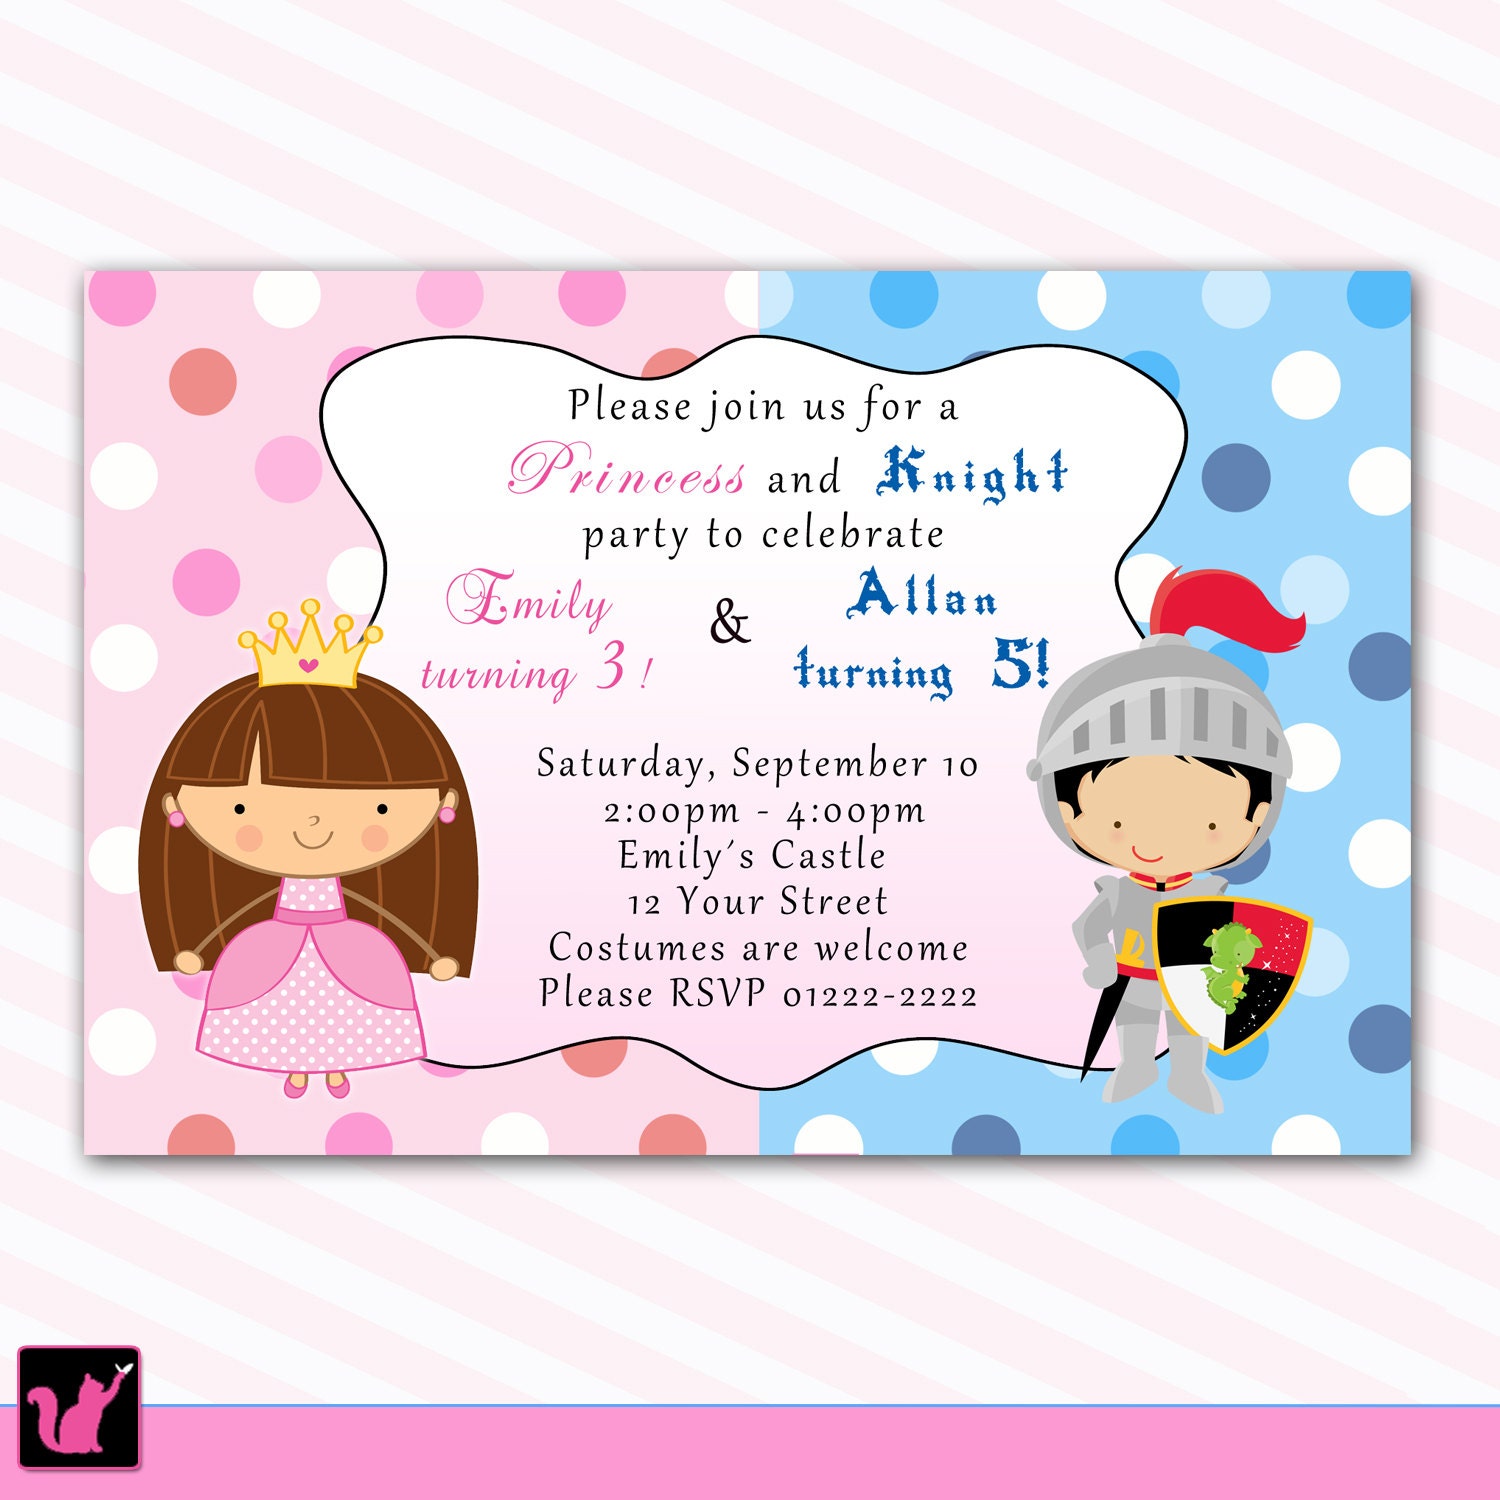 Carte d'invitation d'anniversaire thème princesses